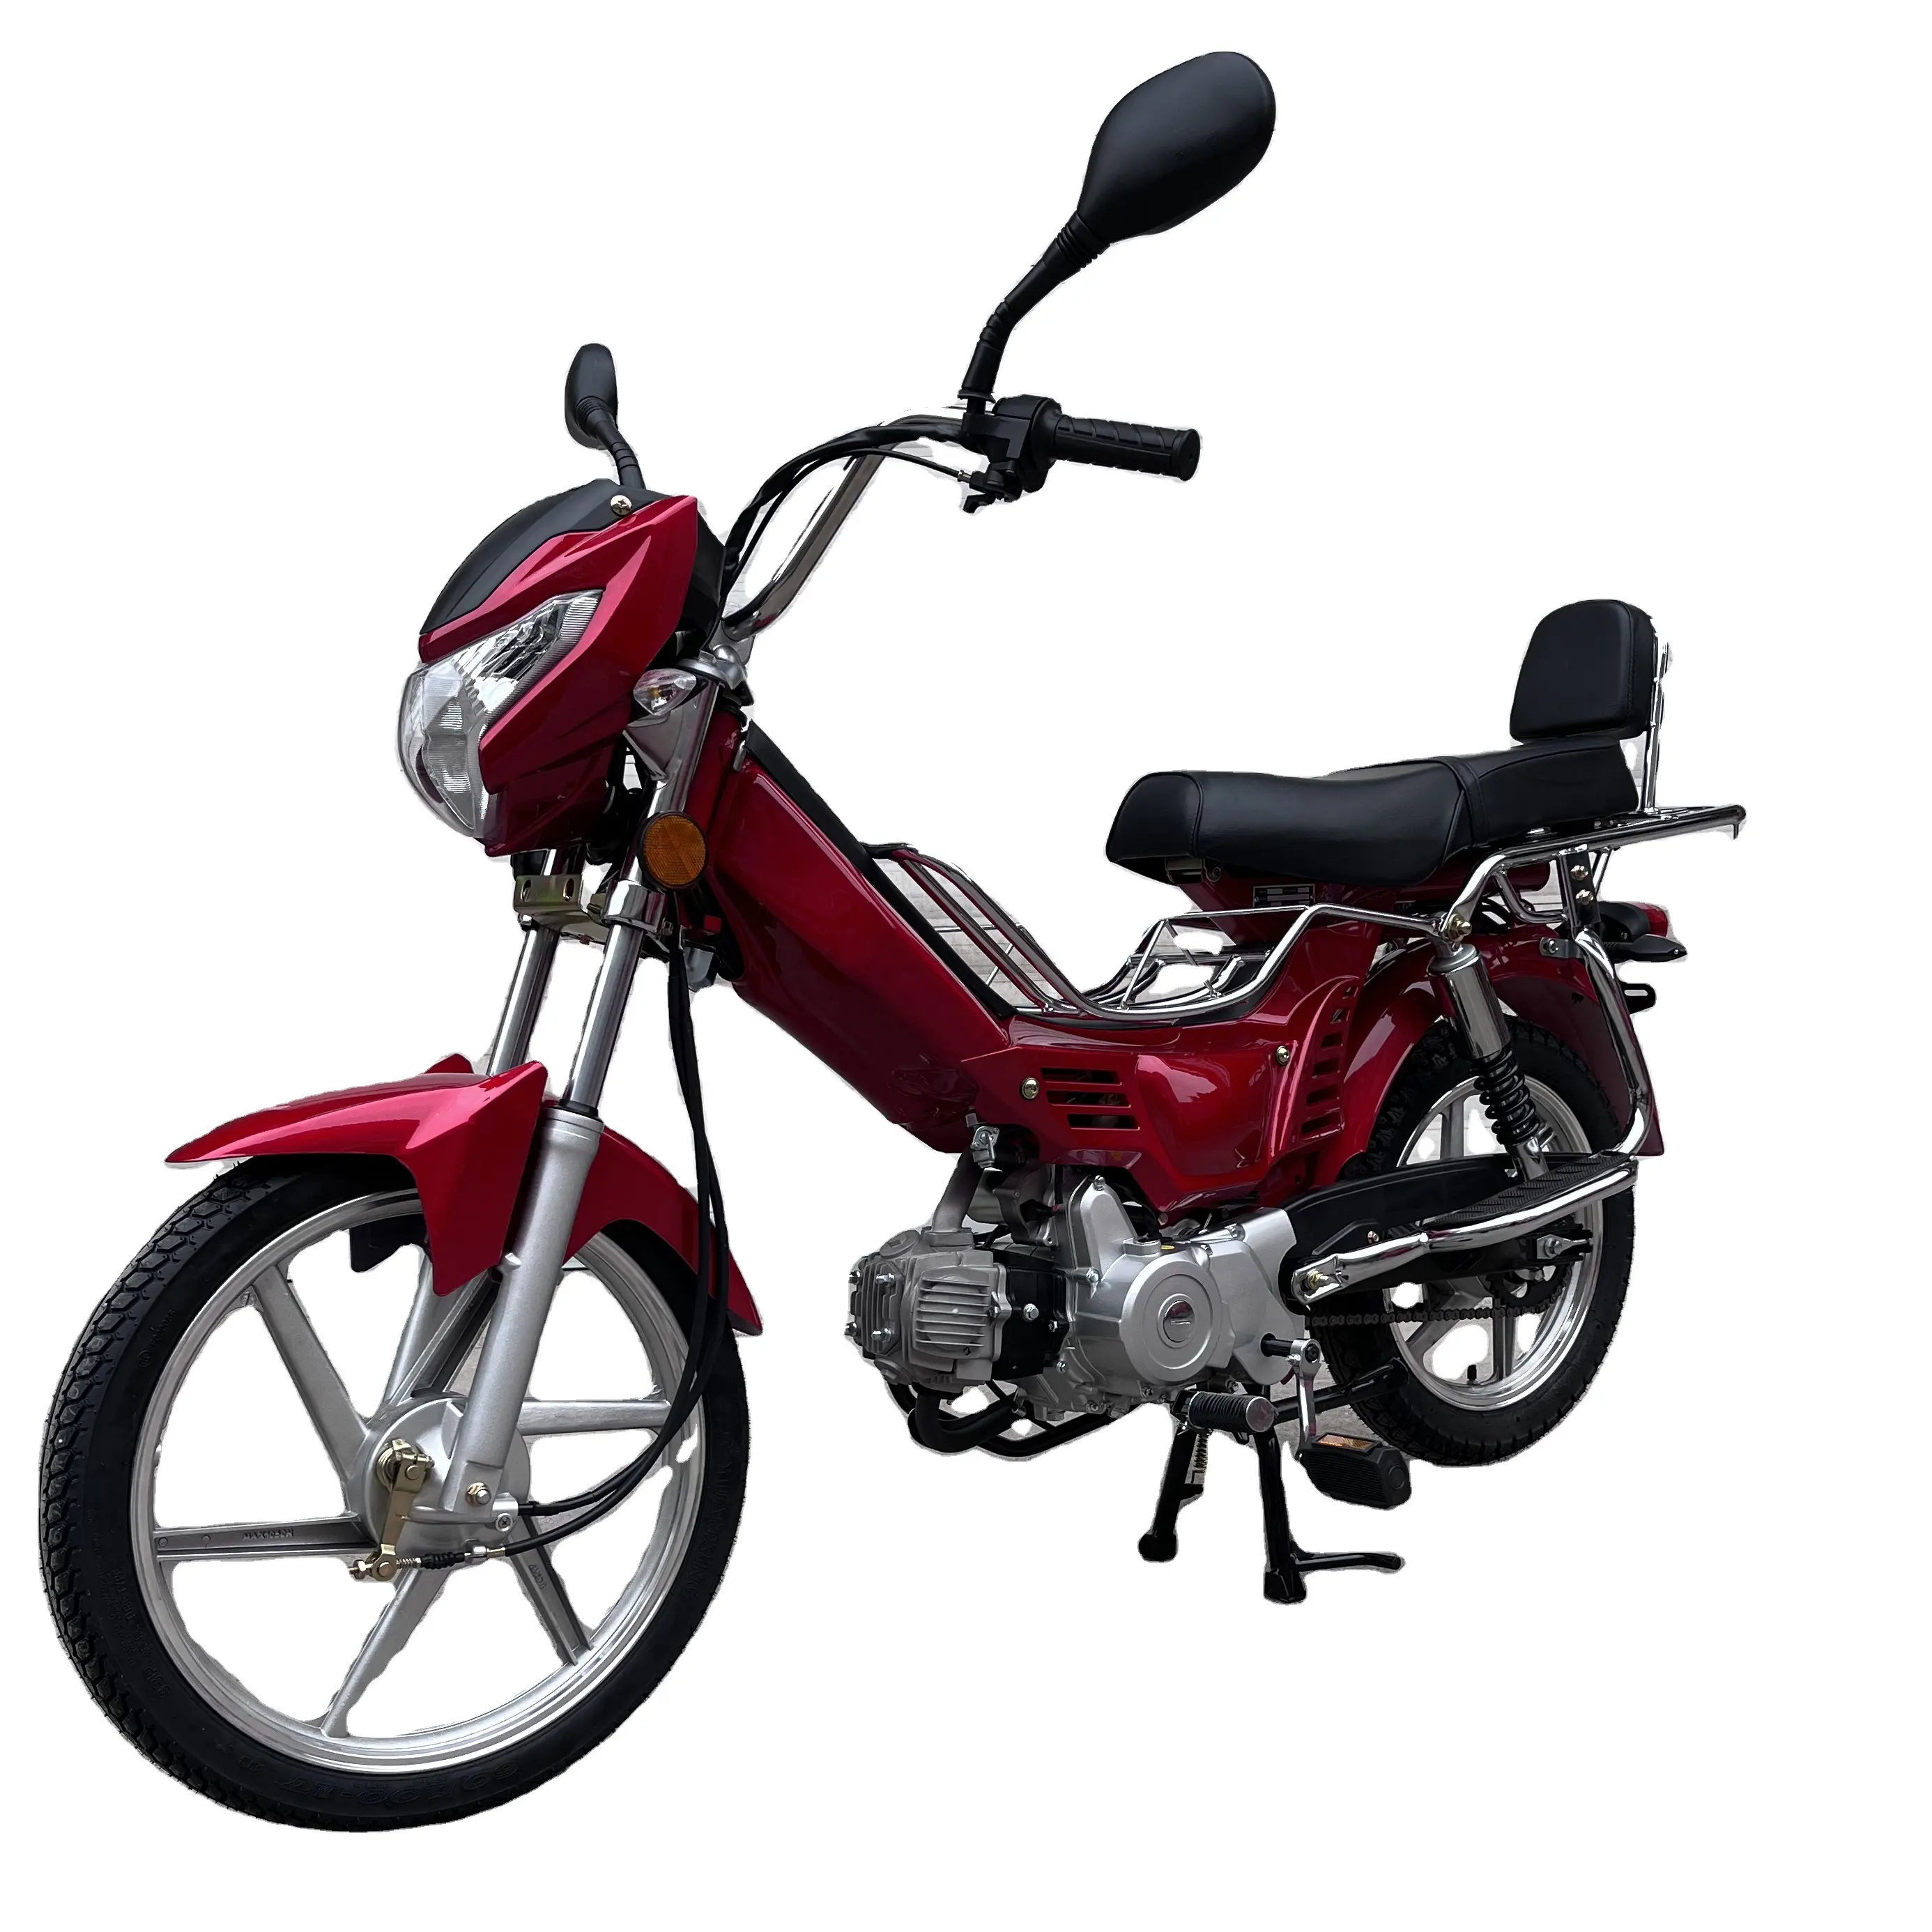 Heiße Verkäufe Günstige Mini-Motorrad 50CC Moped Motorrad 70cc 110cc Fahrrad